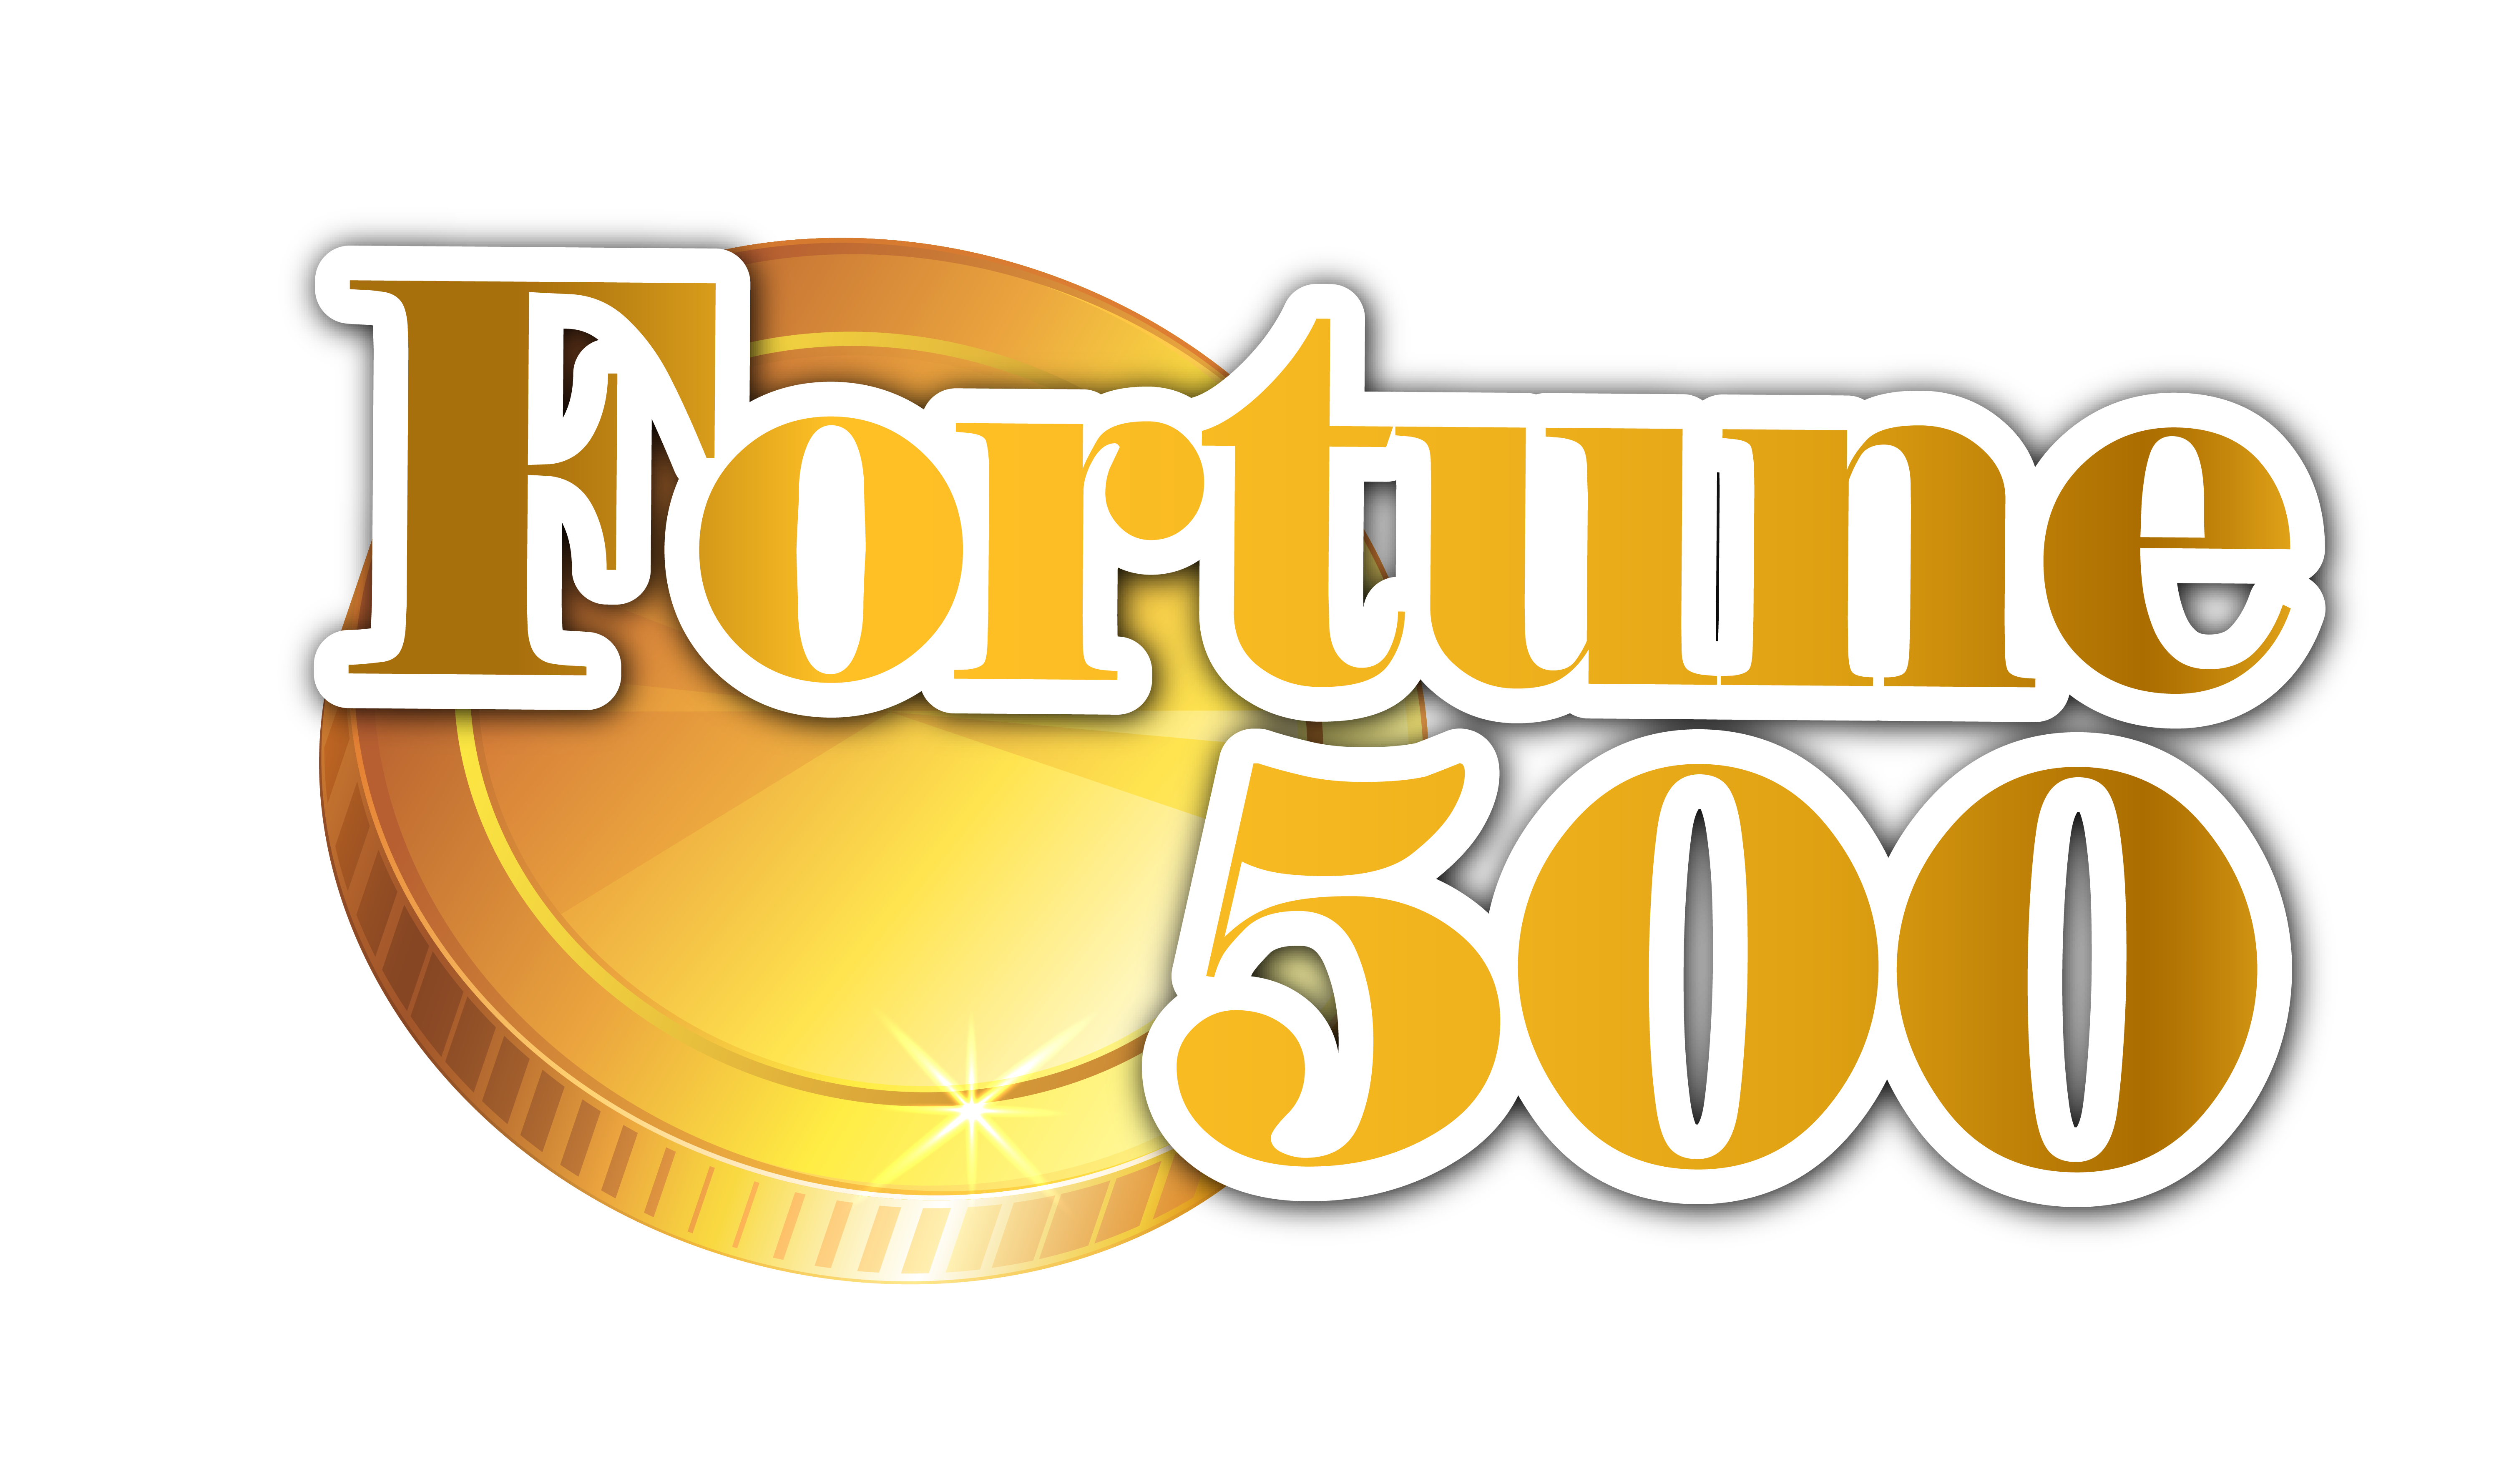 fortune 500 logo transparent